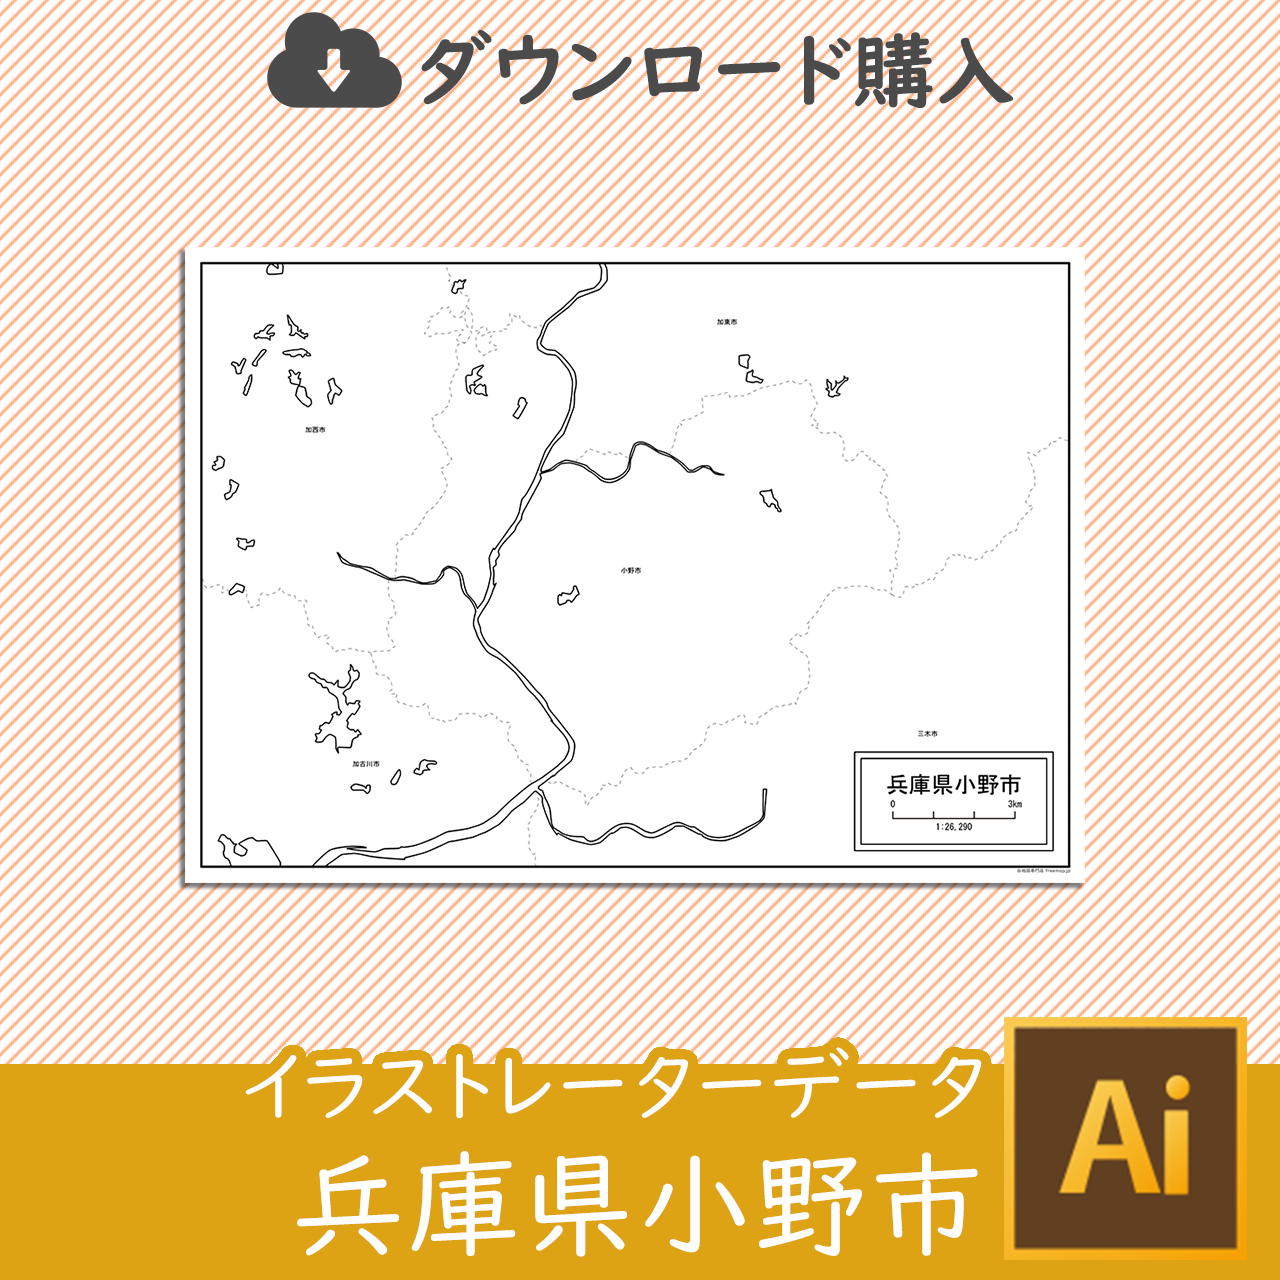 小野市のaiデータのサムネイル画像